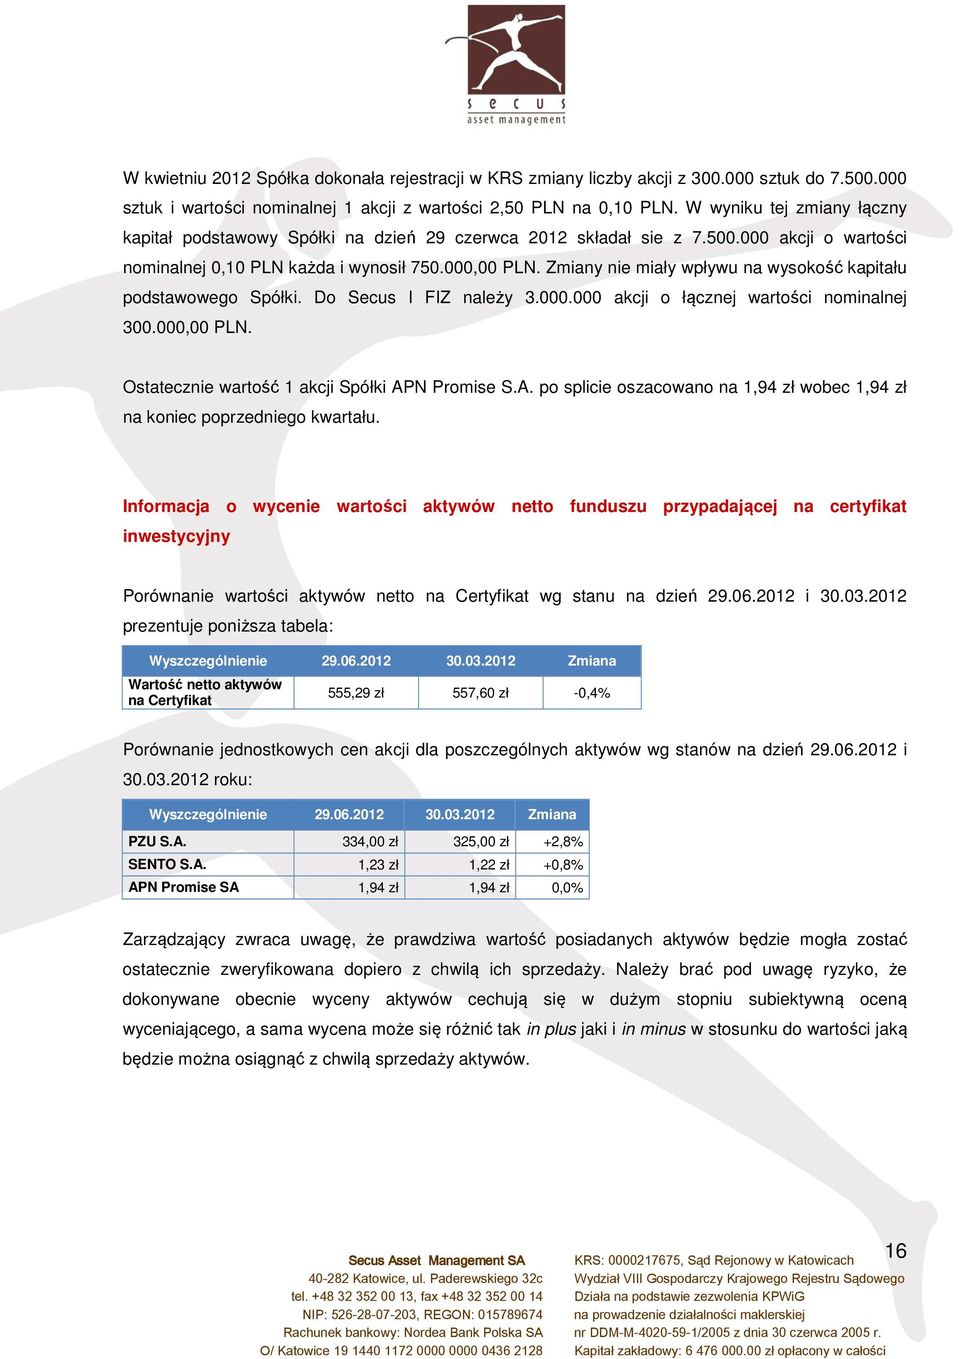 Zmiany nie miały wpływu na wysokość kapitału podstawowego Spółki. Do Secus I FIZ należy 3.000.000 akcji o łącznej wartości nominalnej 300.000,00 PLN. Ostatecznie wartość 1 akcji Spółki APN Promise S.